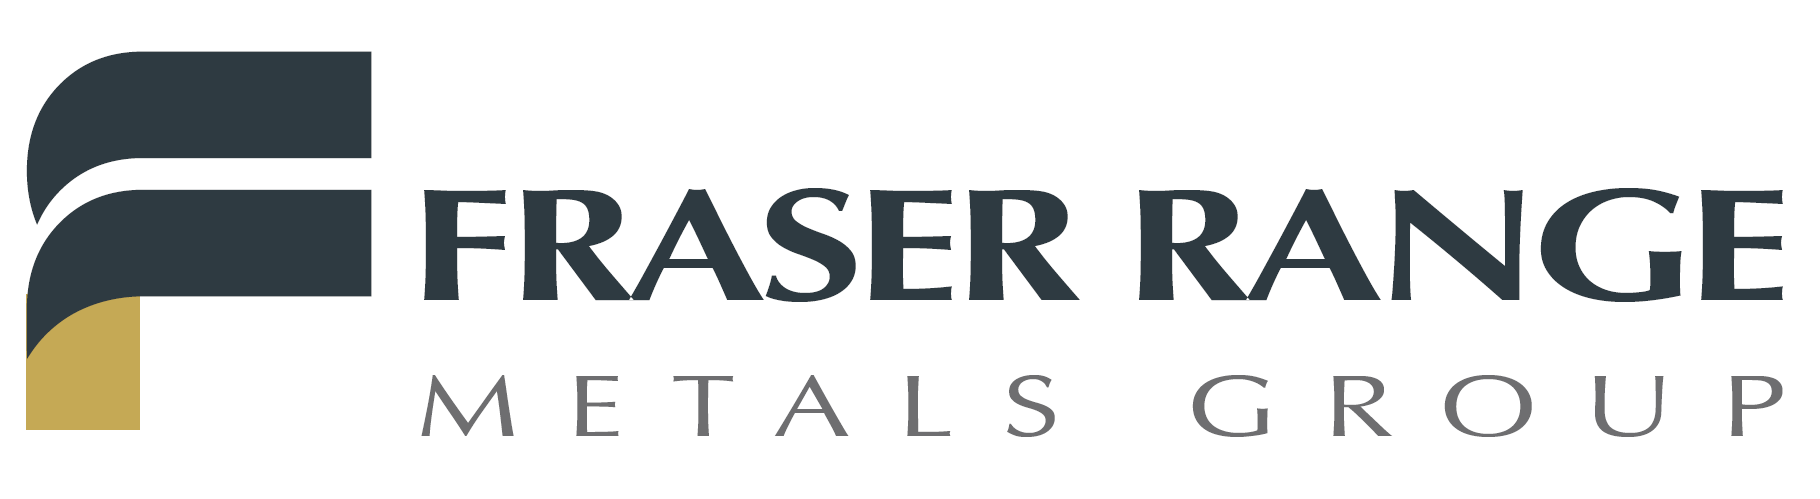 Fraser Range Metals Group Ltd Logo